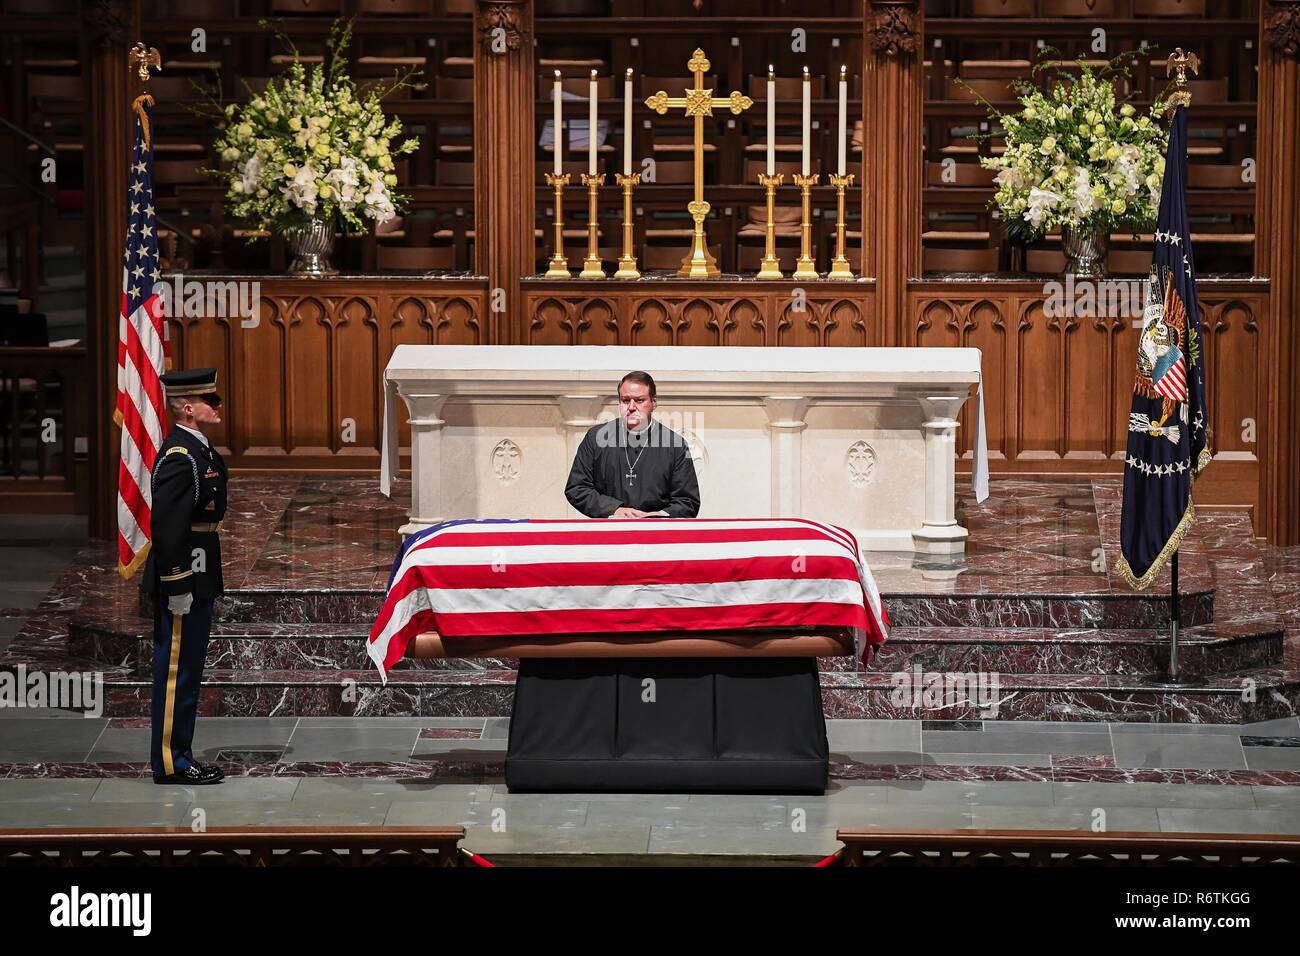 Le cercueil recouvert du drapeau de l'ancien président George H. W. Bush est béni par le Révérend Dr. Russell Jones Levenson, Jr., le pasteur de la famille Bush, une fois de retour à la maison à Saint Martins Episcopal Church après les funérailles nationales à Washington le 6 décembre 2018 à Houston, Texas. Bush, le 41e président, est décédé à son domicile de Houston à l'âge de 94 ans. Banque D'Images